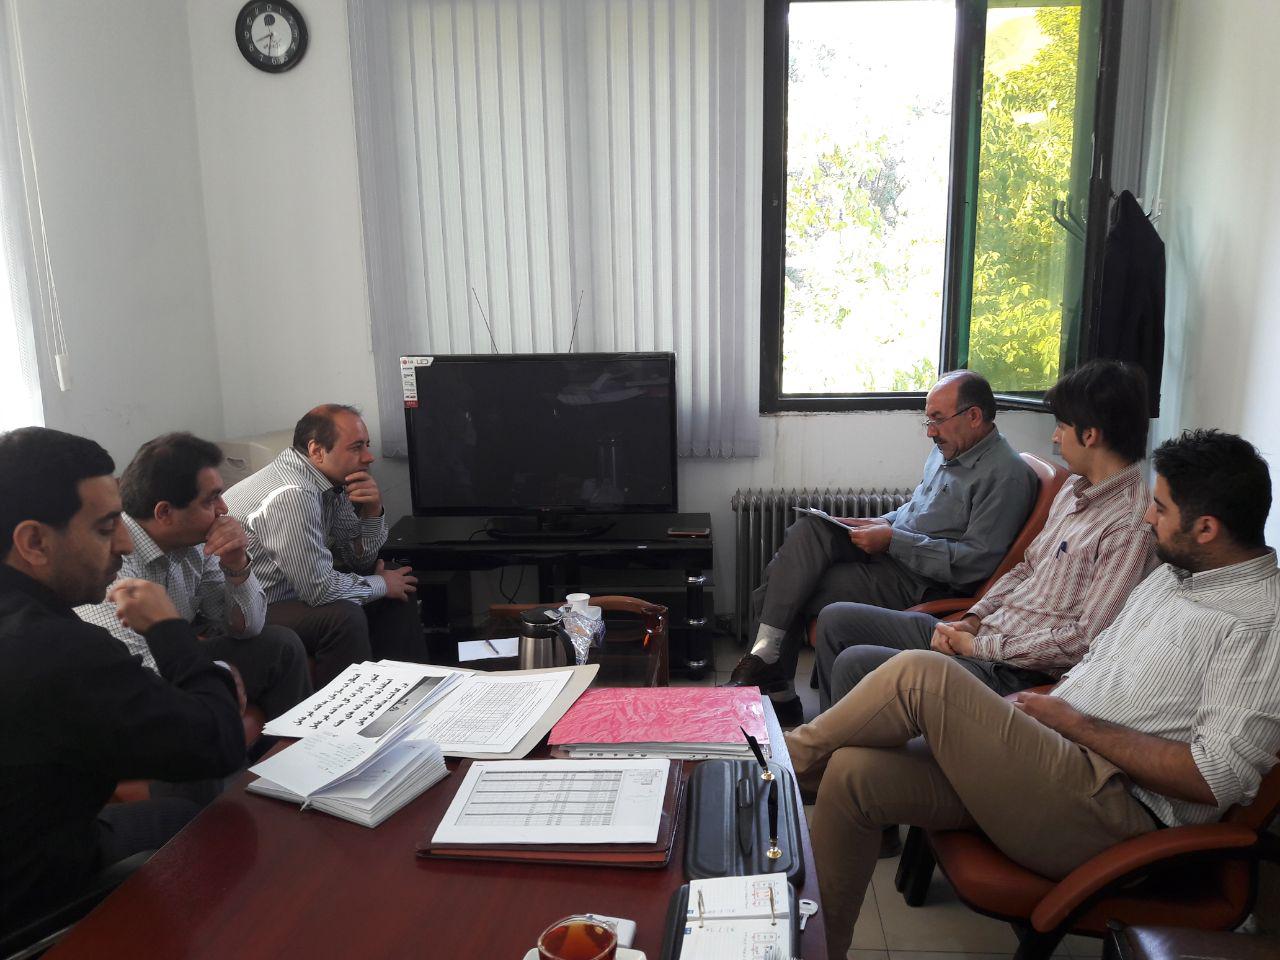 جلسه هماهنگی و برنامه ریزی  جهت برگزاری هفته پدافندغیرعامل دراداره کل پدافندغیرعامل استانداری کردستان برگزار گردید.